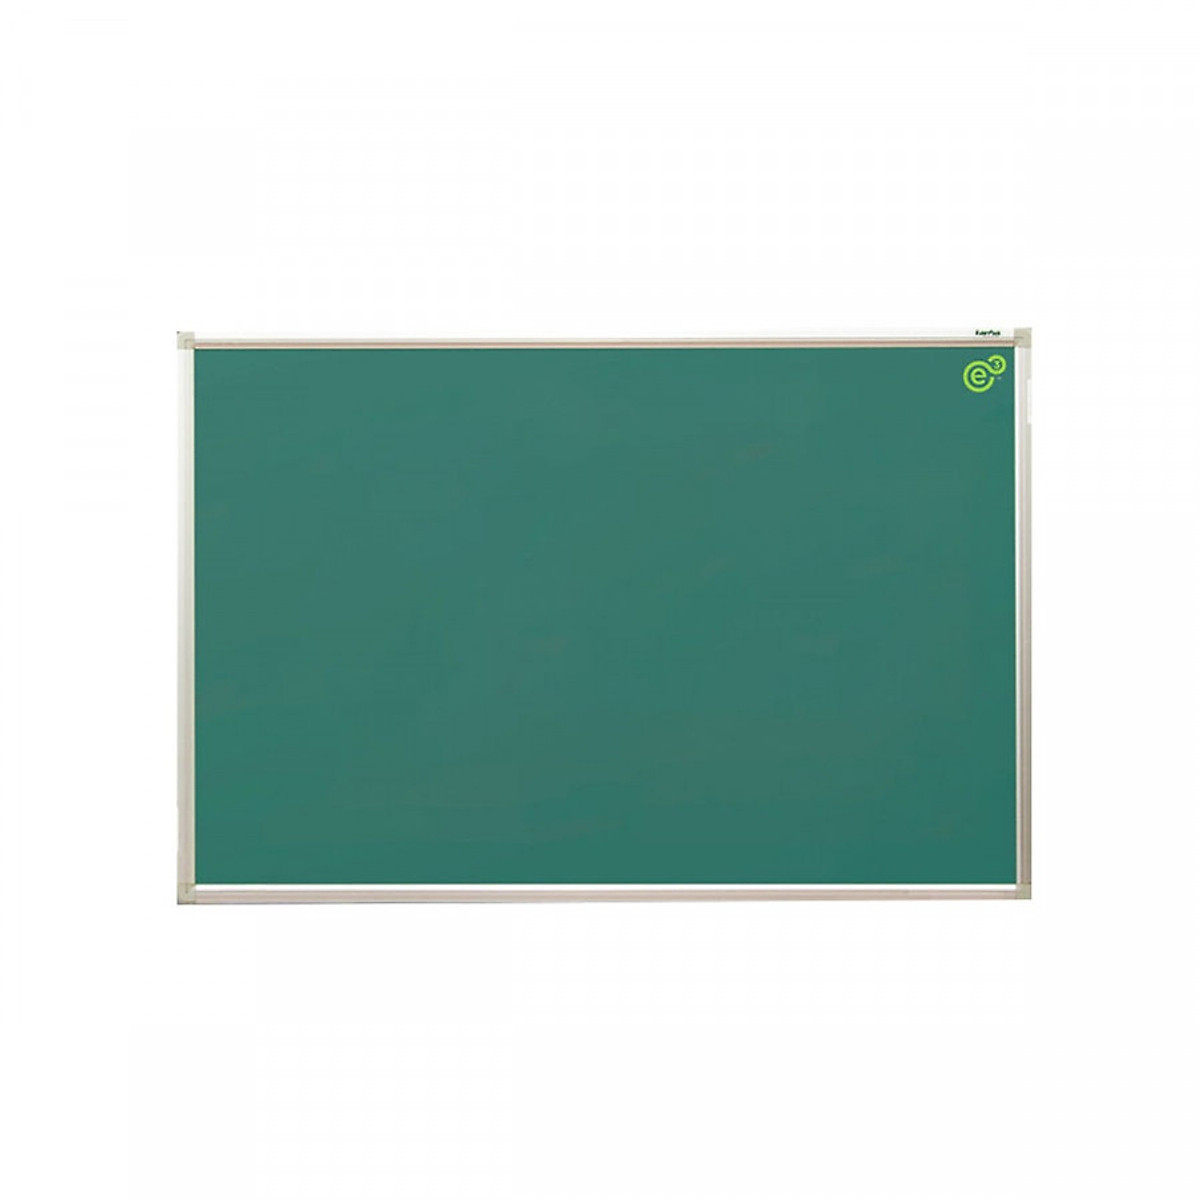 Bảng từ xanh viết phấn Hàn Quốc 80x120cm (Tặng phấn, khăn lau,nam châm)